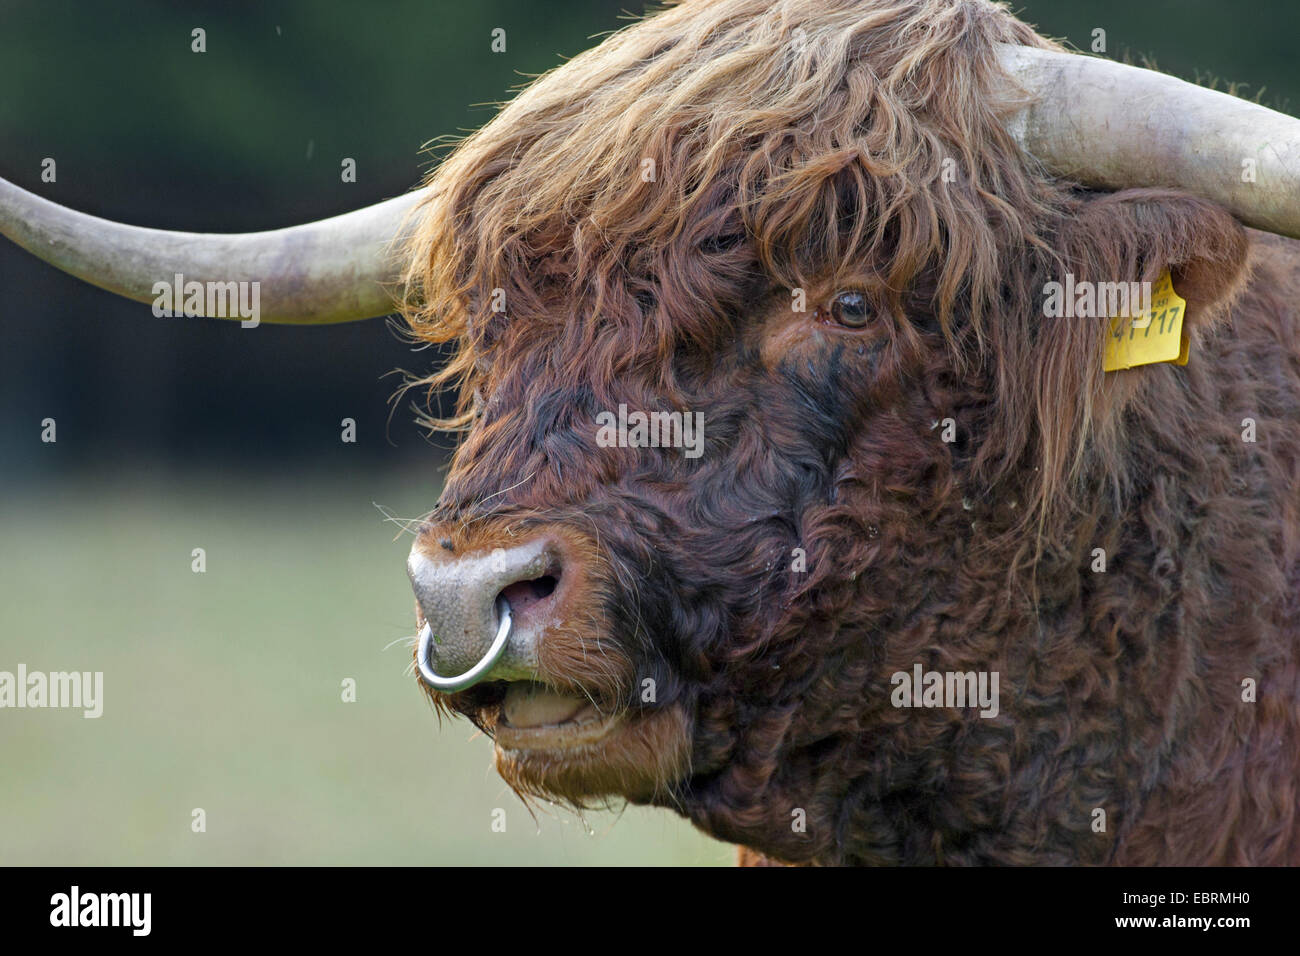 Scottish Highland Cattle (Bos primigenius f. taurus), bull, portrait, Belgium Stock Photo